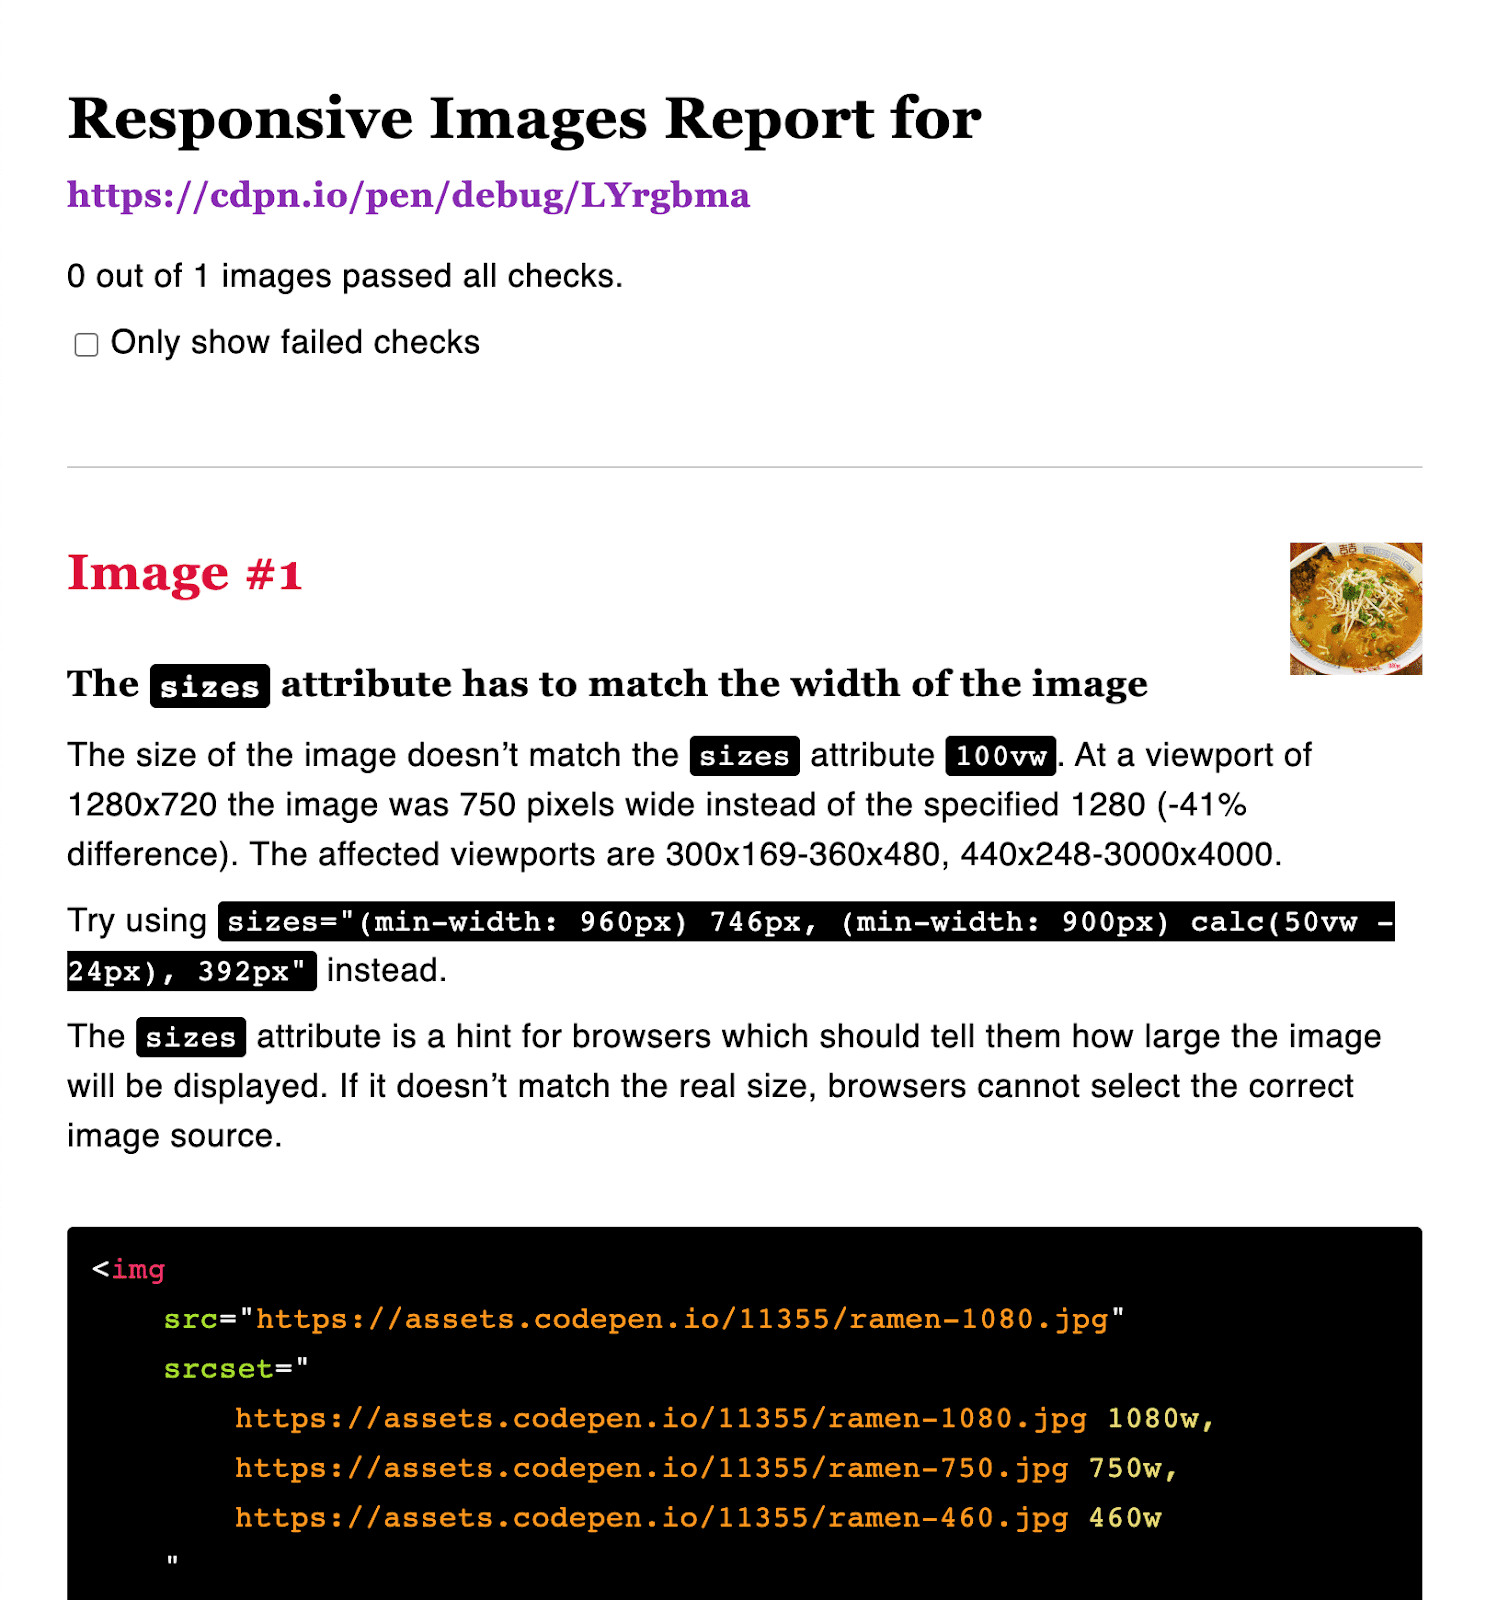 گزارش تصویری پاسخگو با ابعاد پیشنهادی.